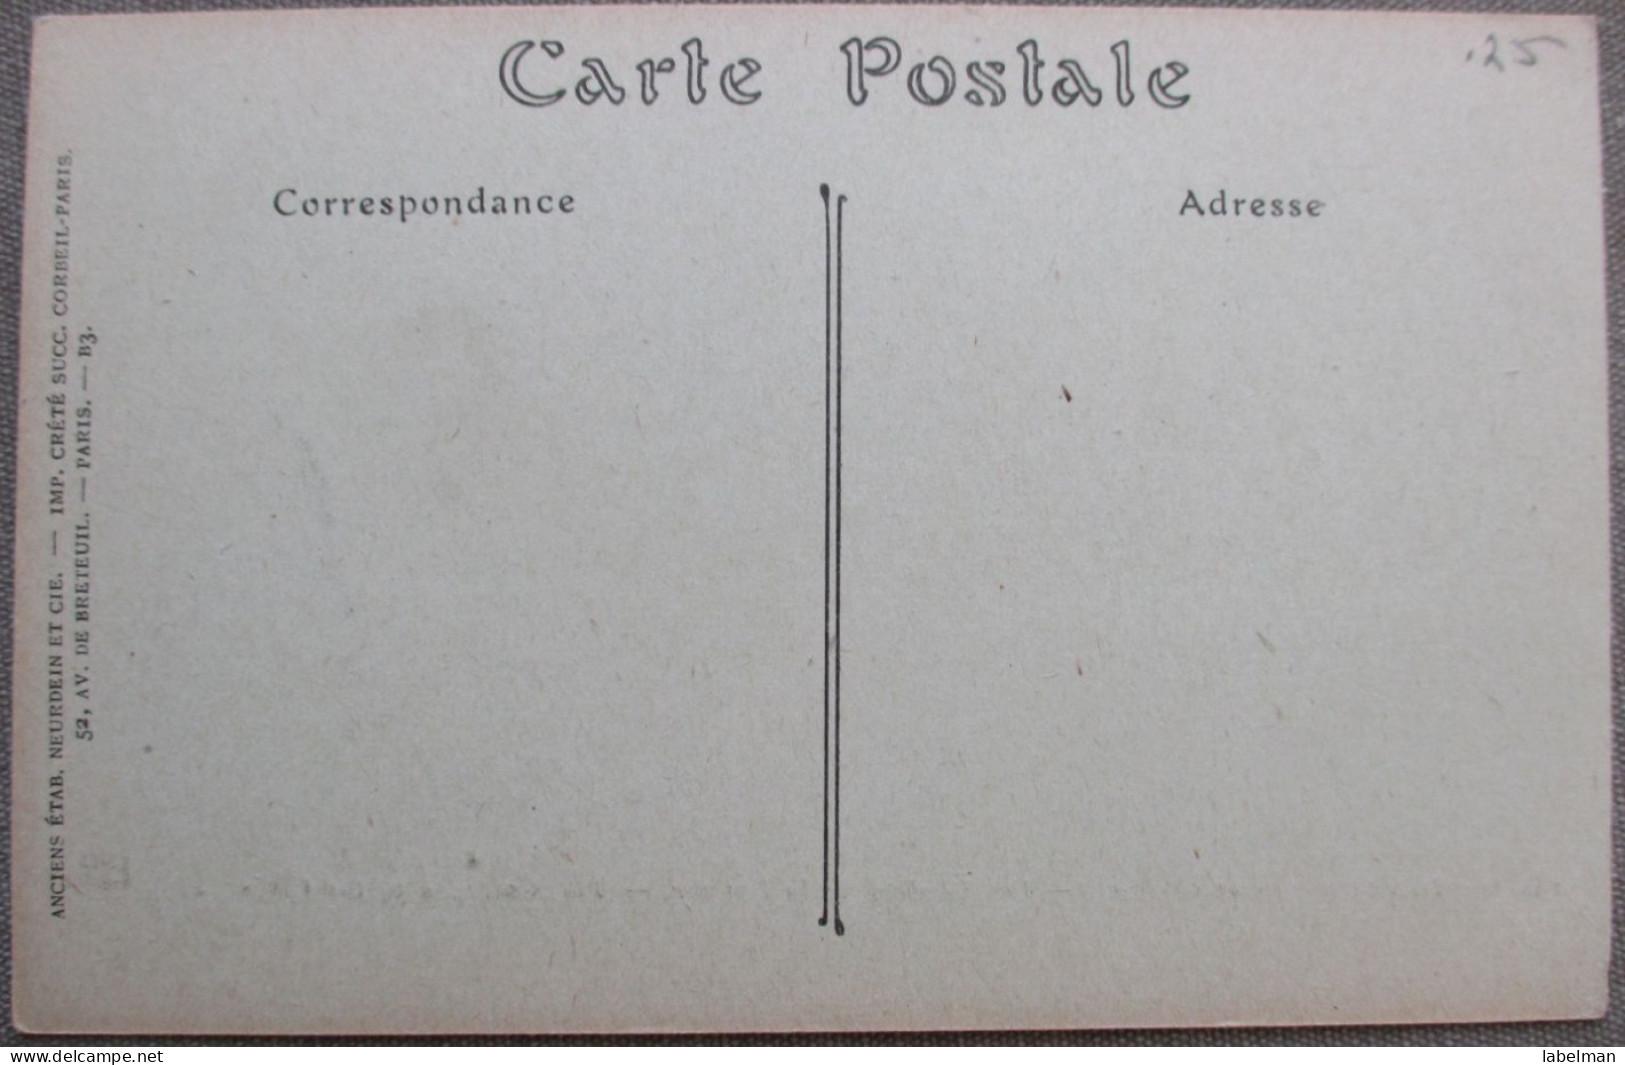 FRANCE BRITTANY DINARD VILAINE CLIFF COTAGES CARTE POSTALE ANSICHTSKARTE POSTCARD CARD CARTOLINA POSTKARTE - Brumath